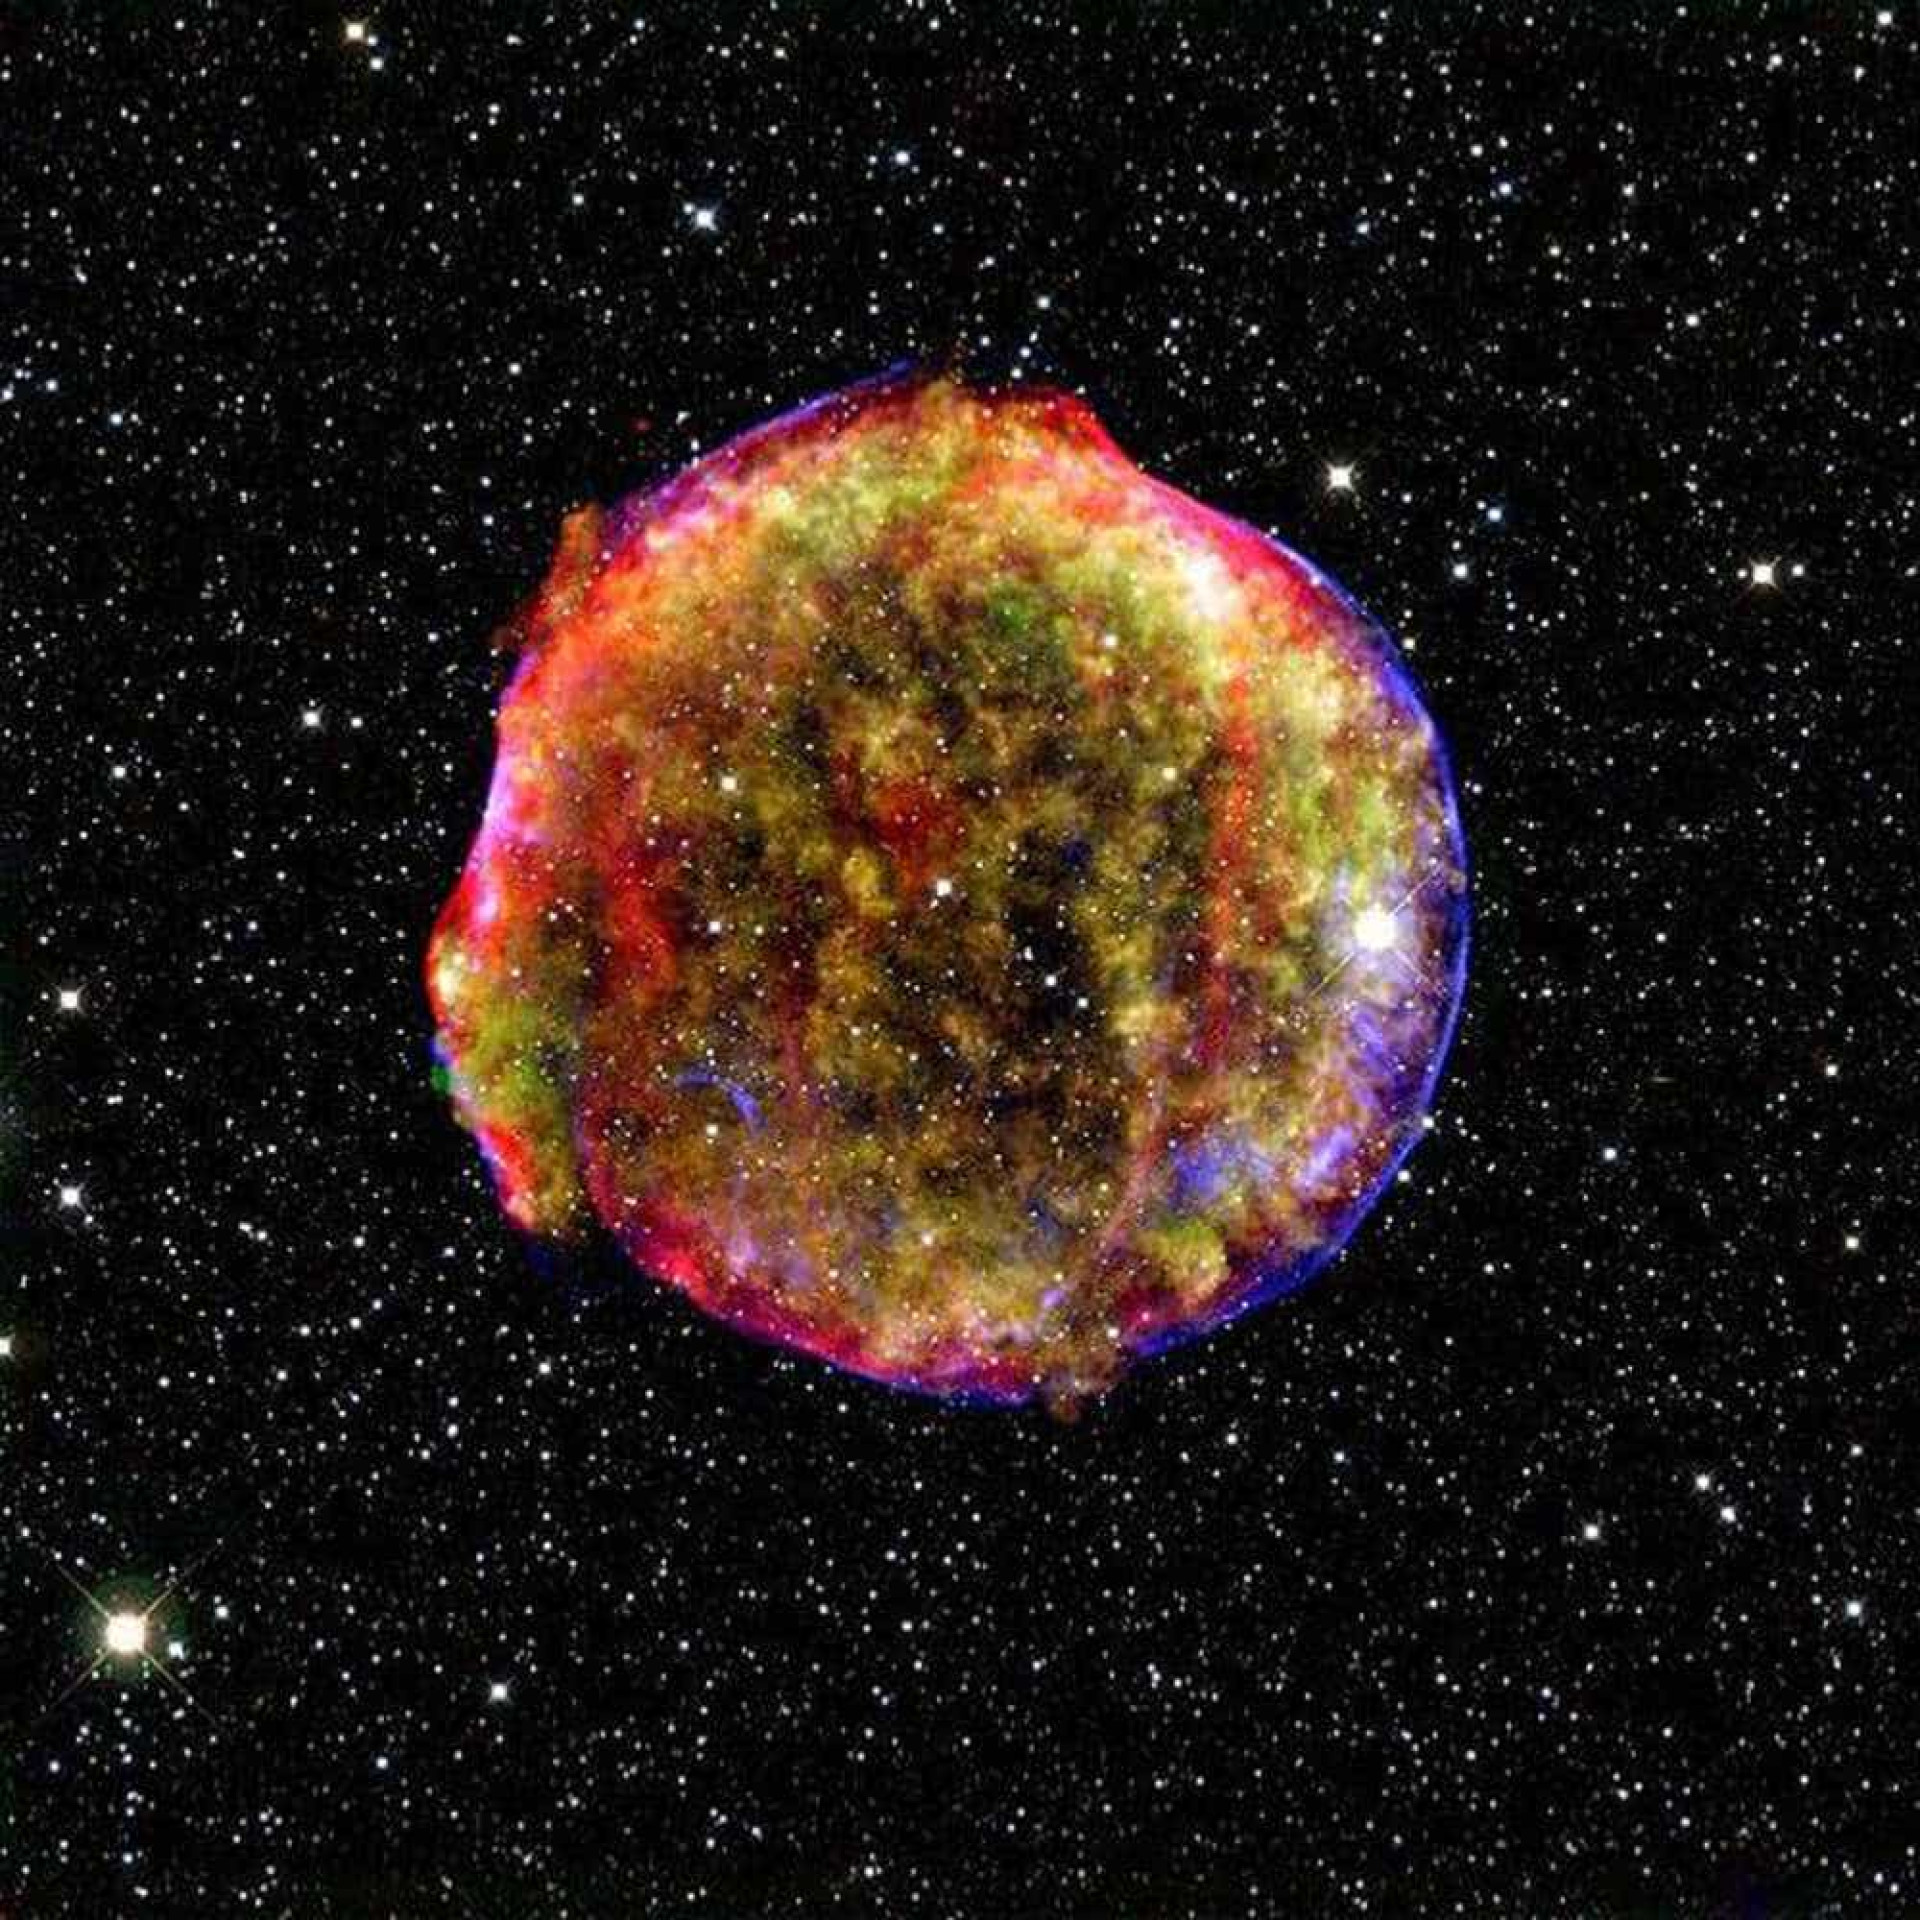 'A teoria de (quase) tudo': Imagem revela complexidade do universo